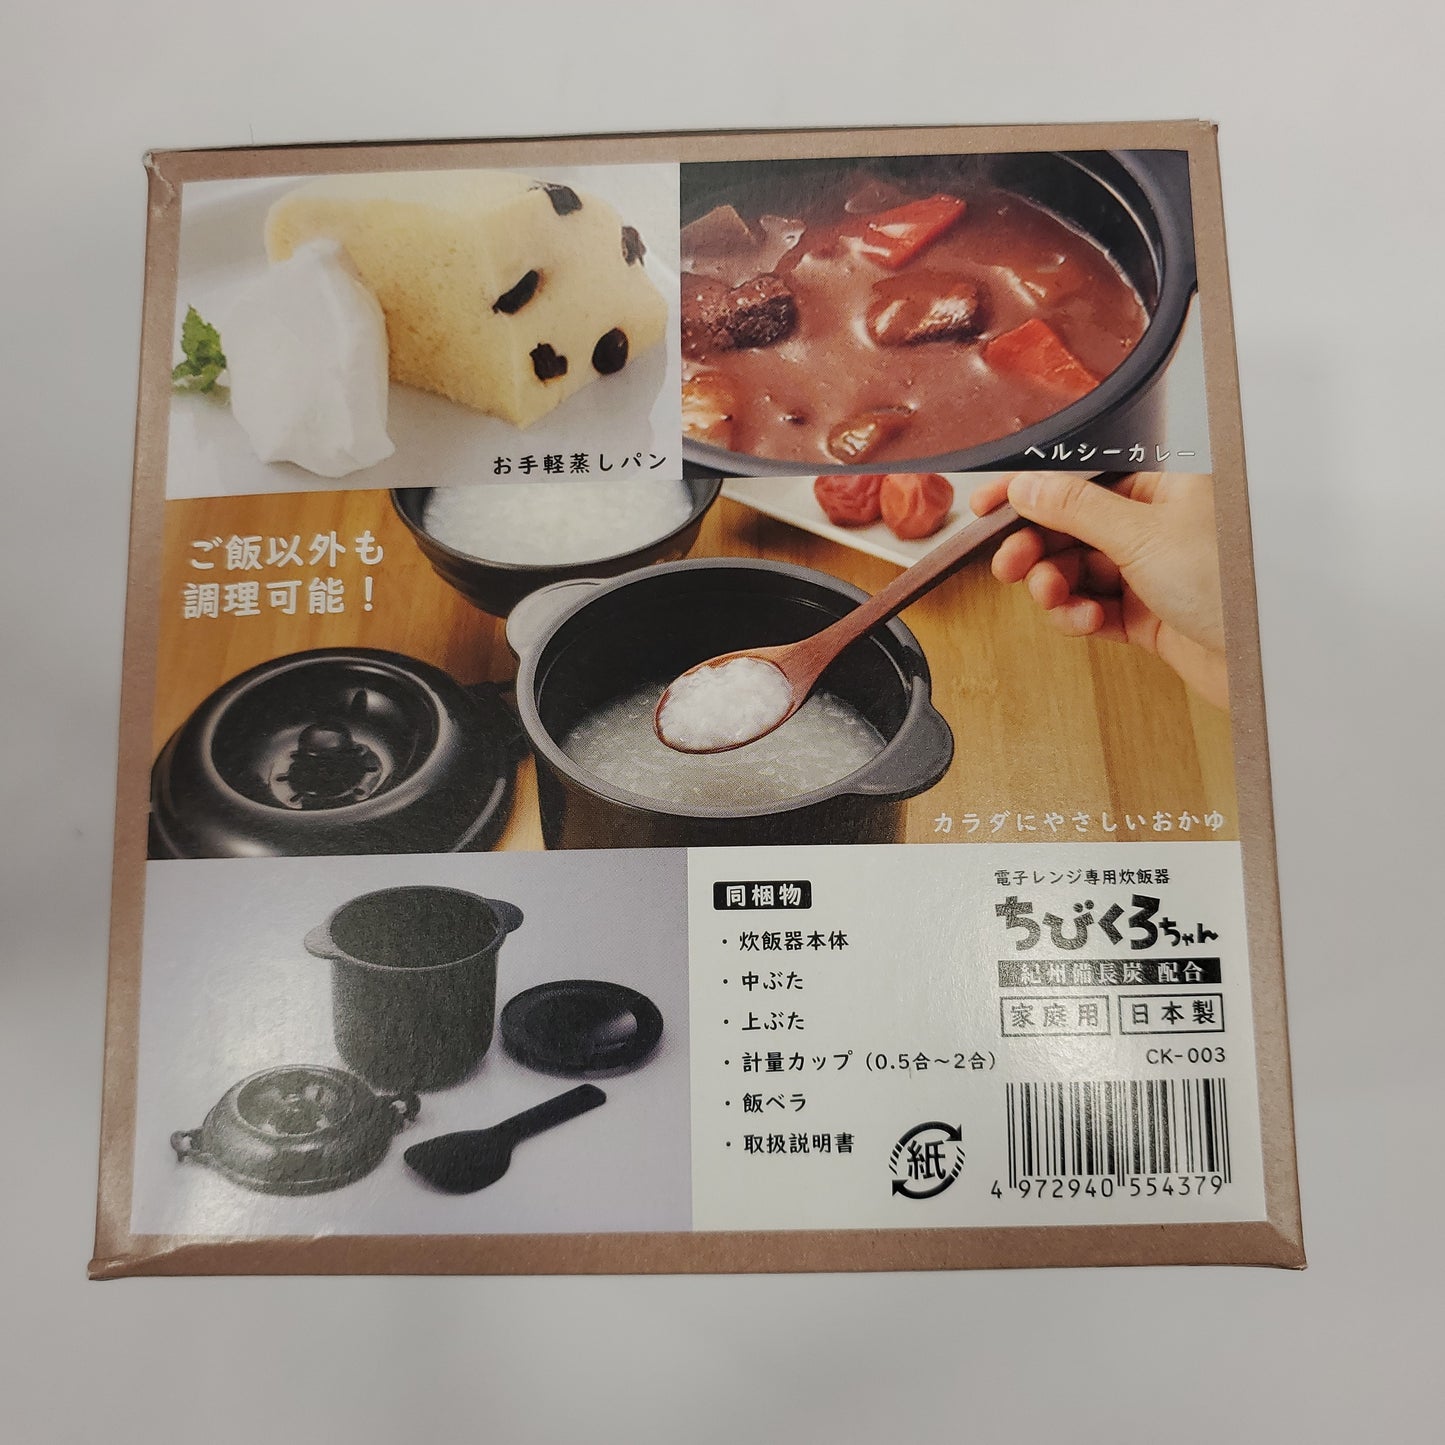 Kakusee Charcoal Microwave Rice Cooker